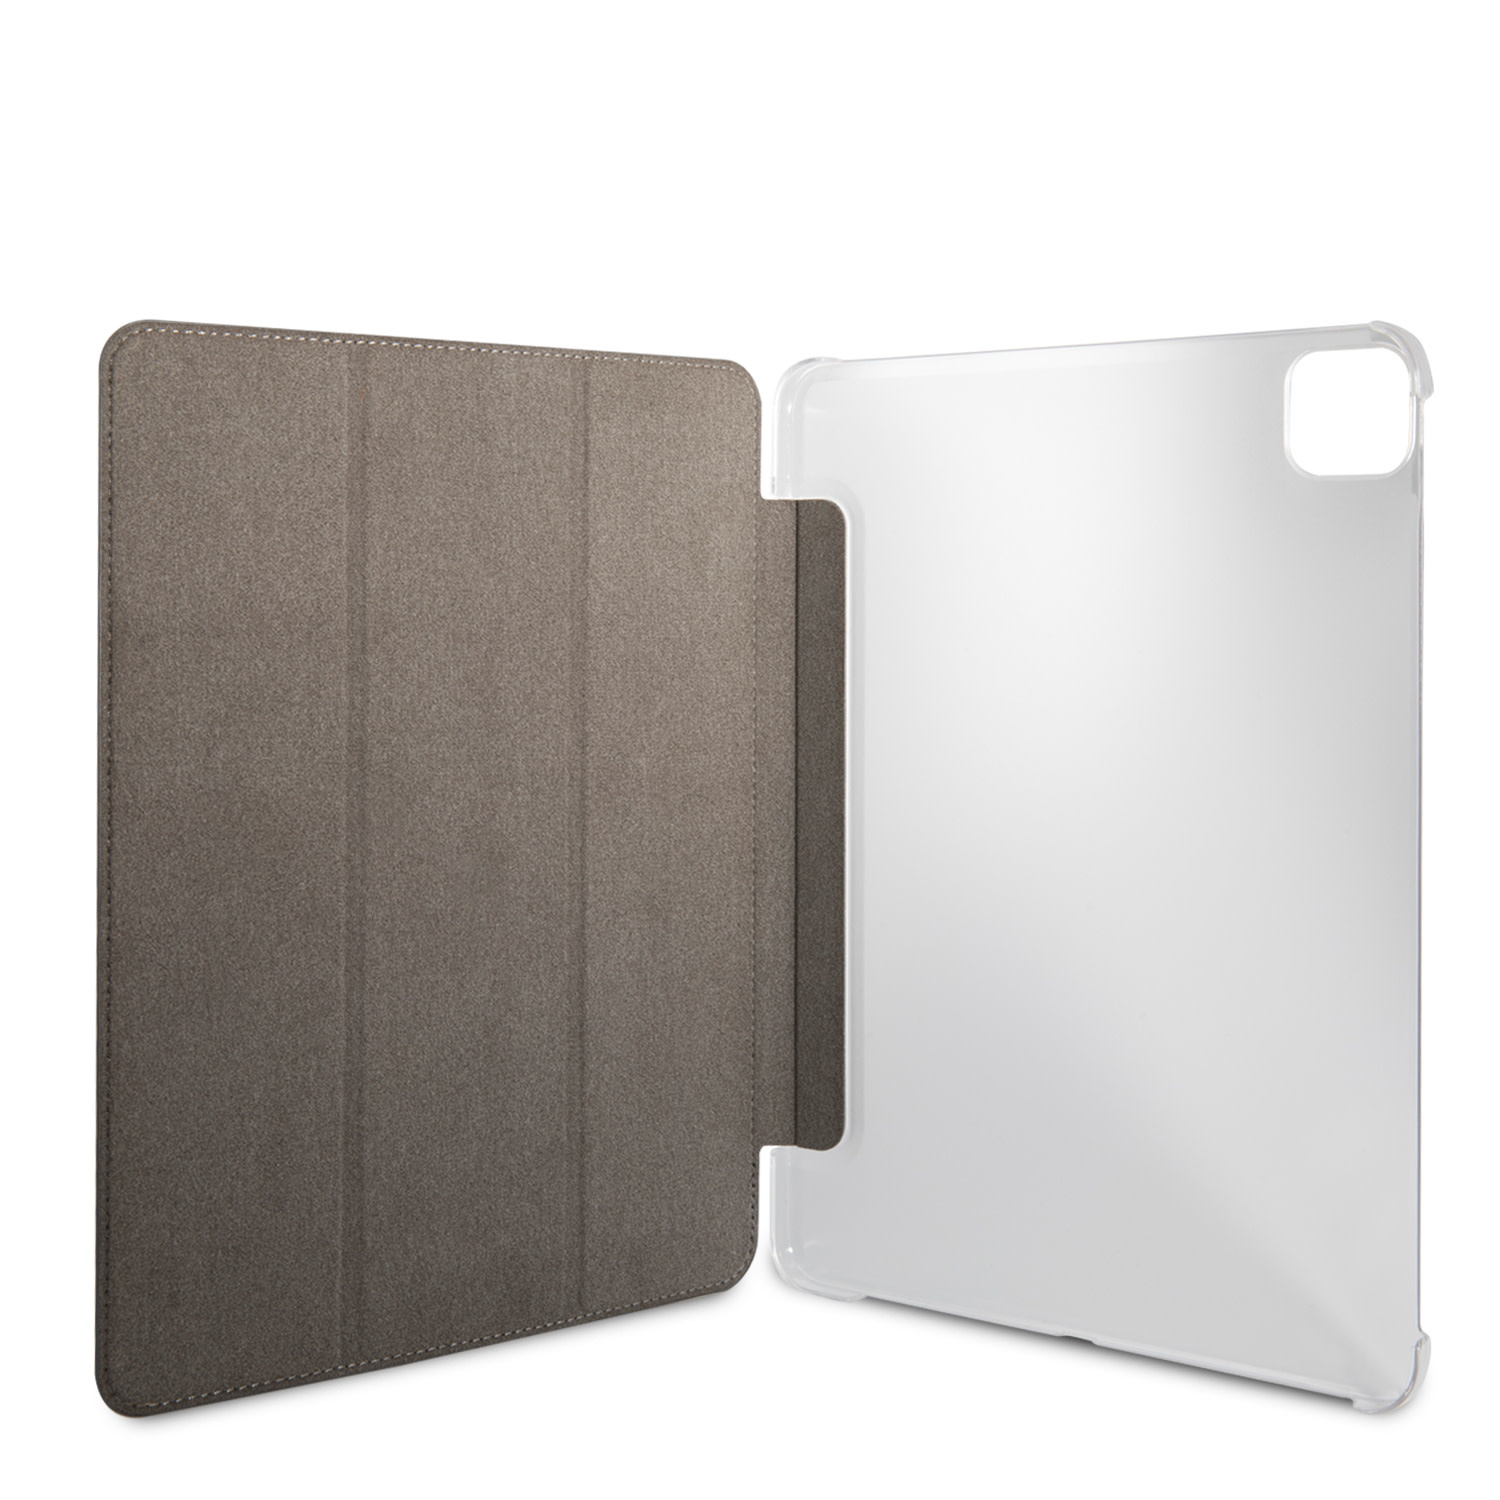 Guess Folio iPad Pro 11 colos (2021) könyvtok - Ba